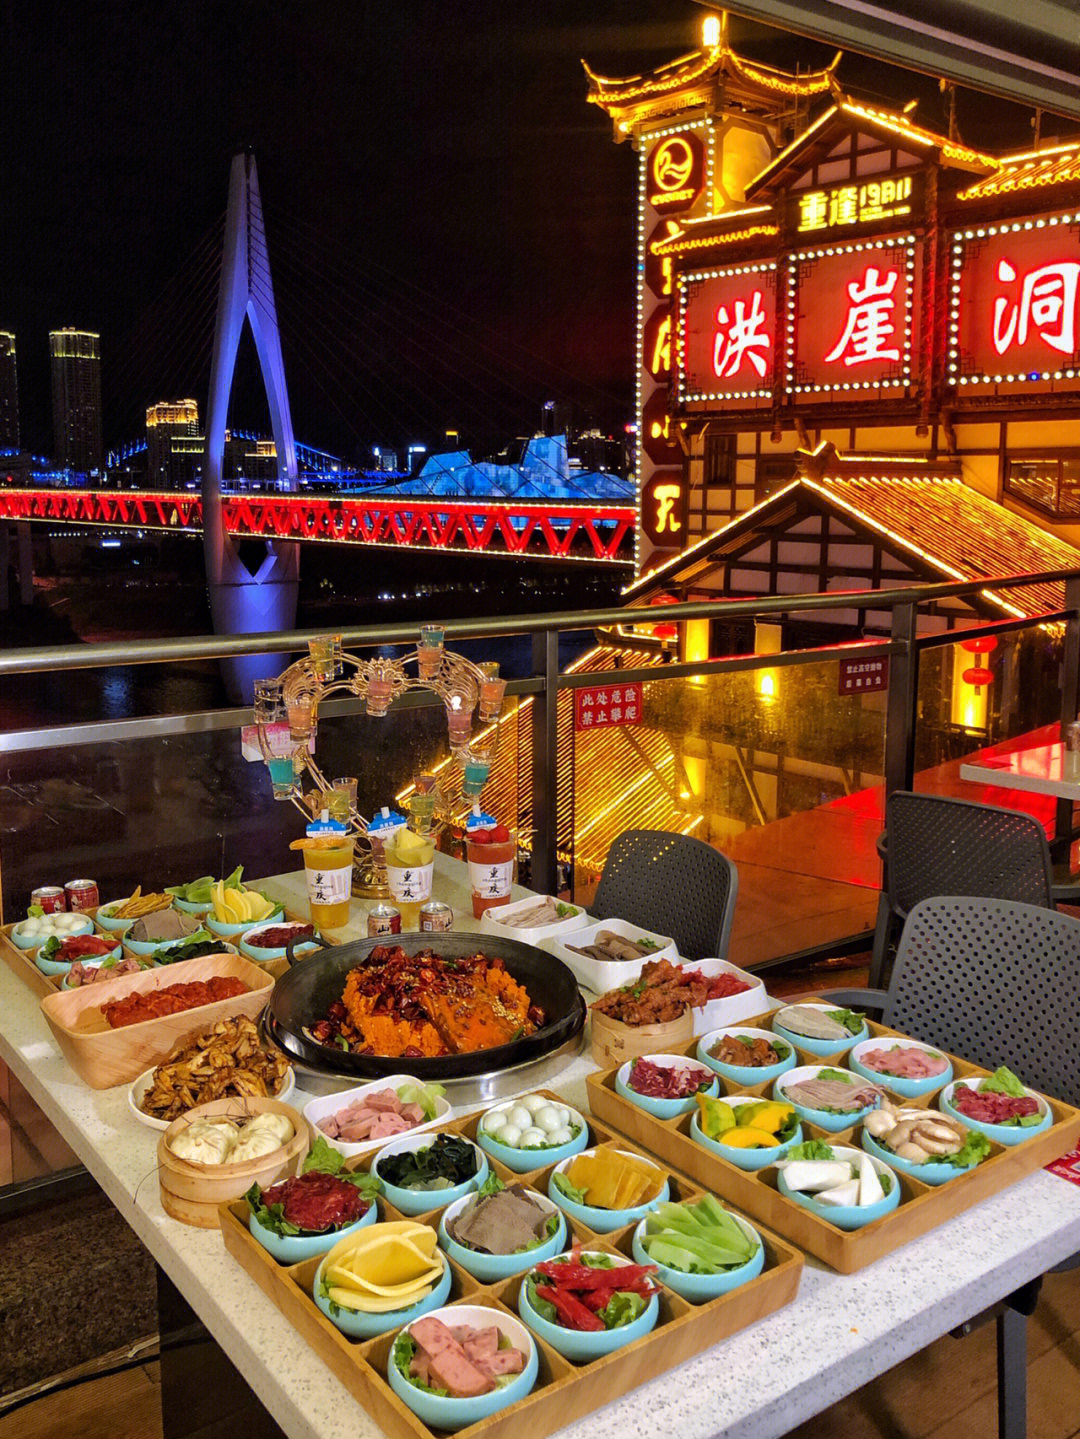 91这绝对是我在重庆吃过夜景最美的火锅了!